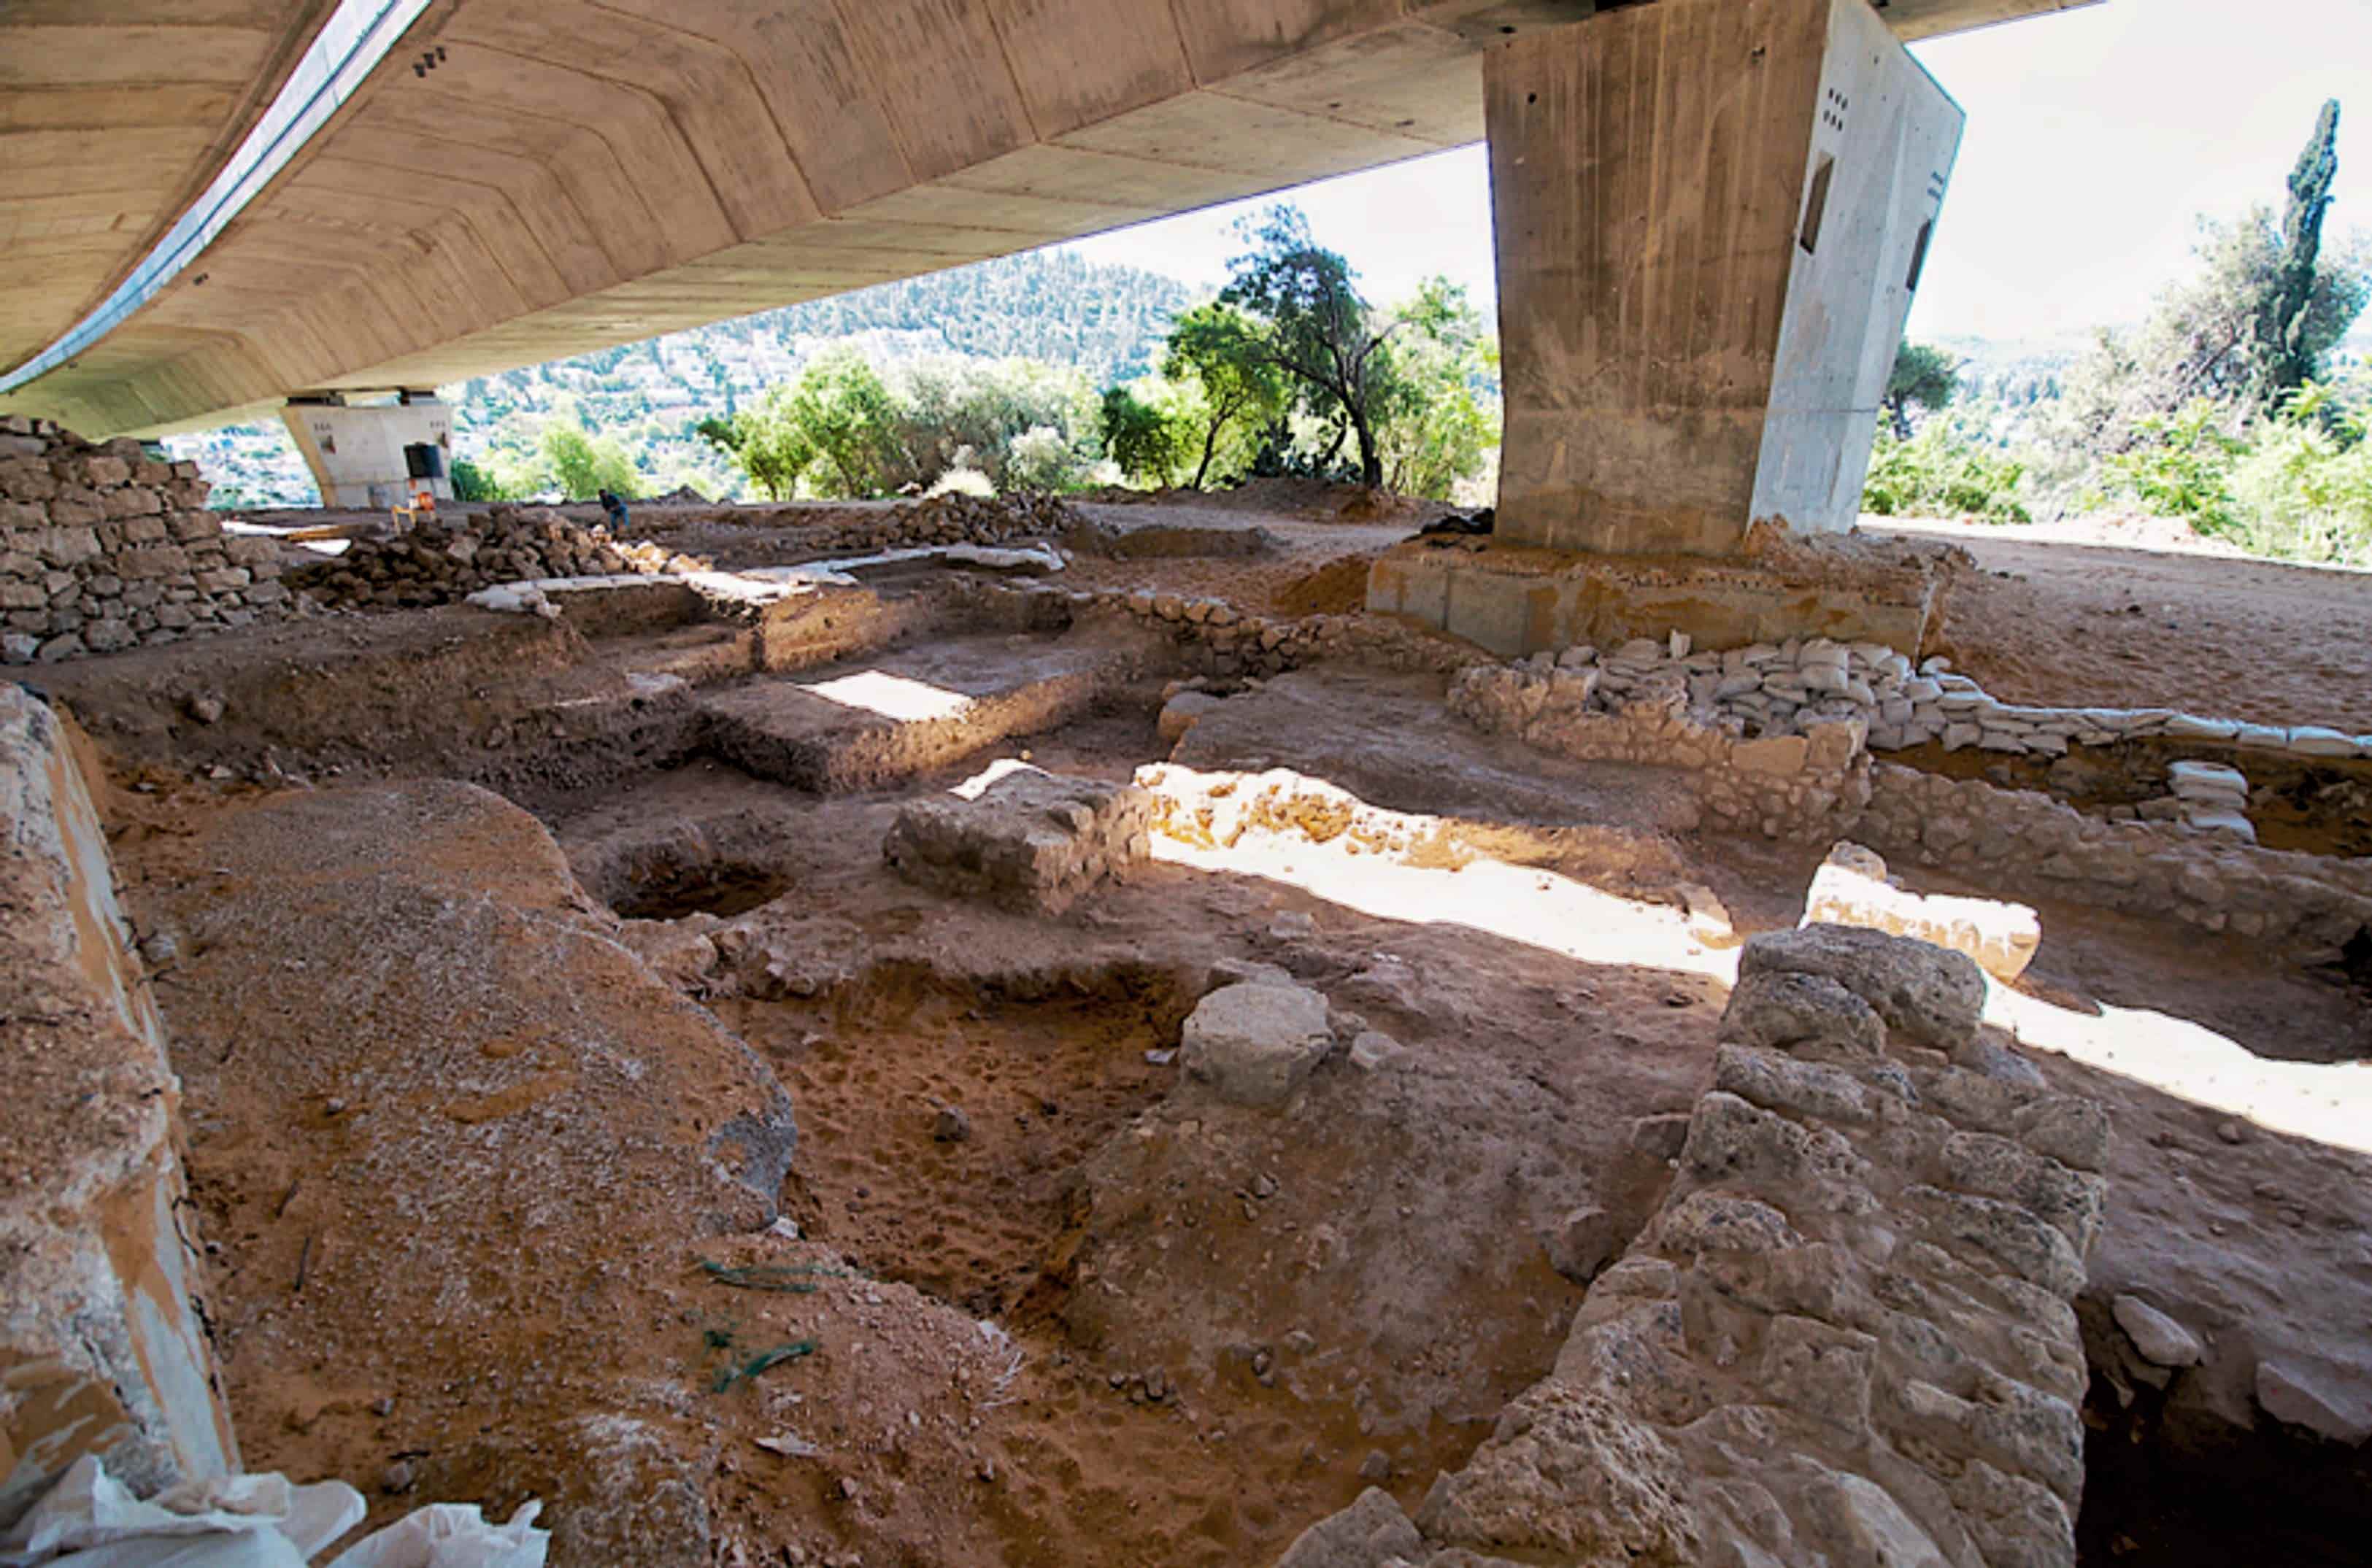 जेरुसेलम नजिकैको 9,000 वर्ष पुरानो साइट प्रागैतिहासिक बस्ती 2 को "बिग ब्यांग" हो